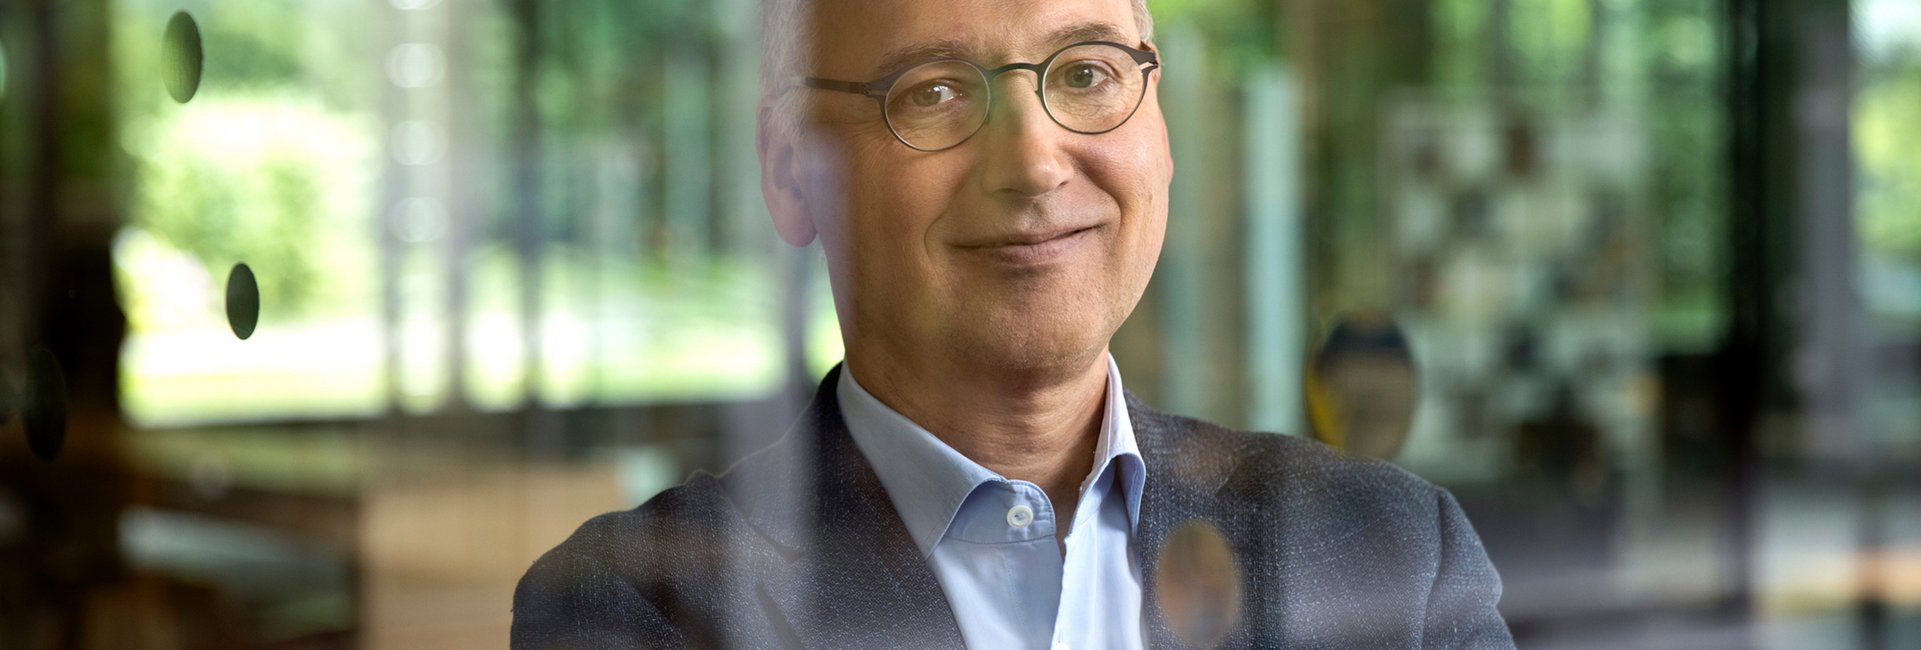 Werner Baumann, Vorstandsvorsitzender der Bayer AG